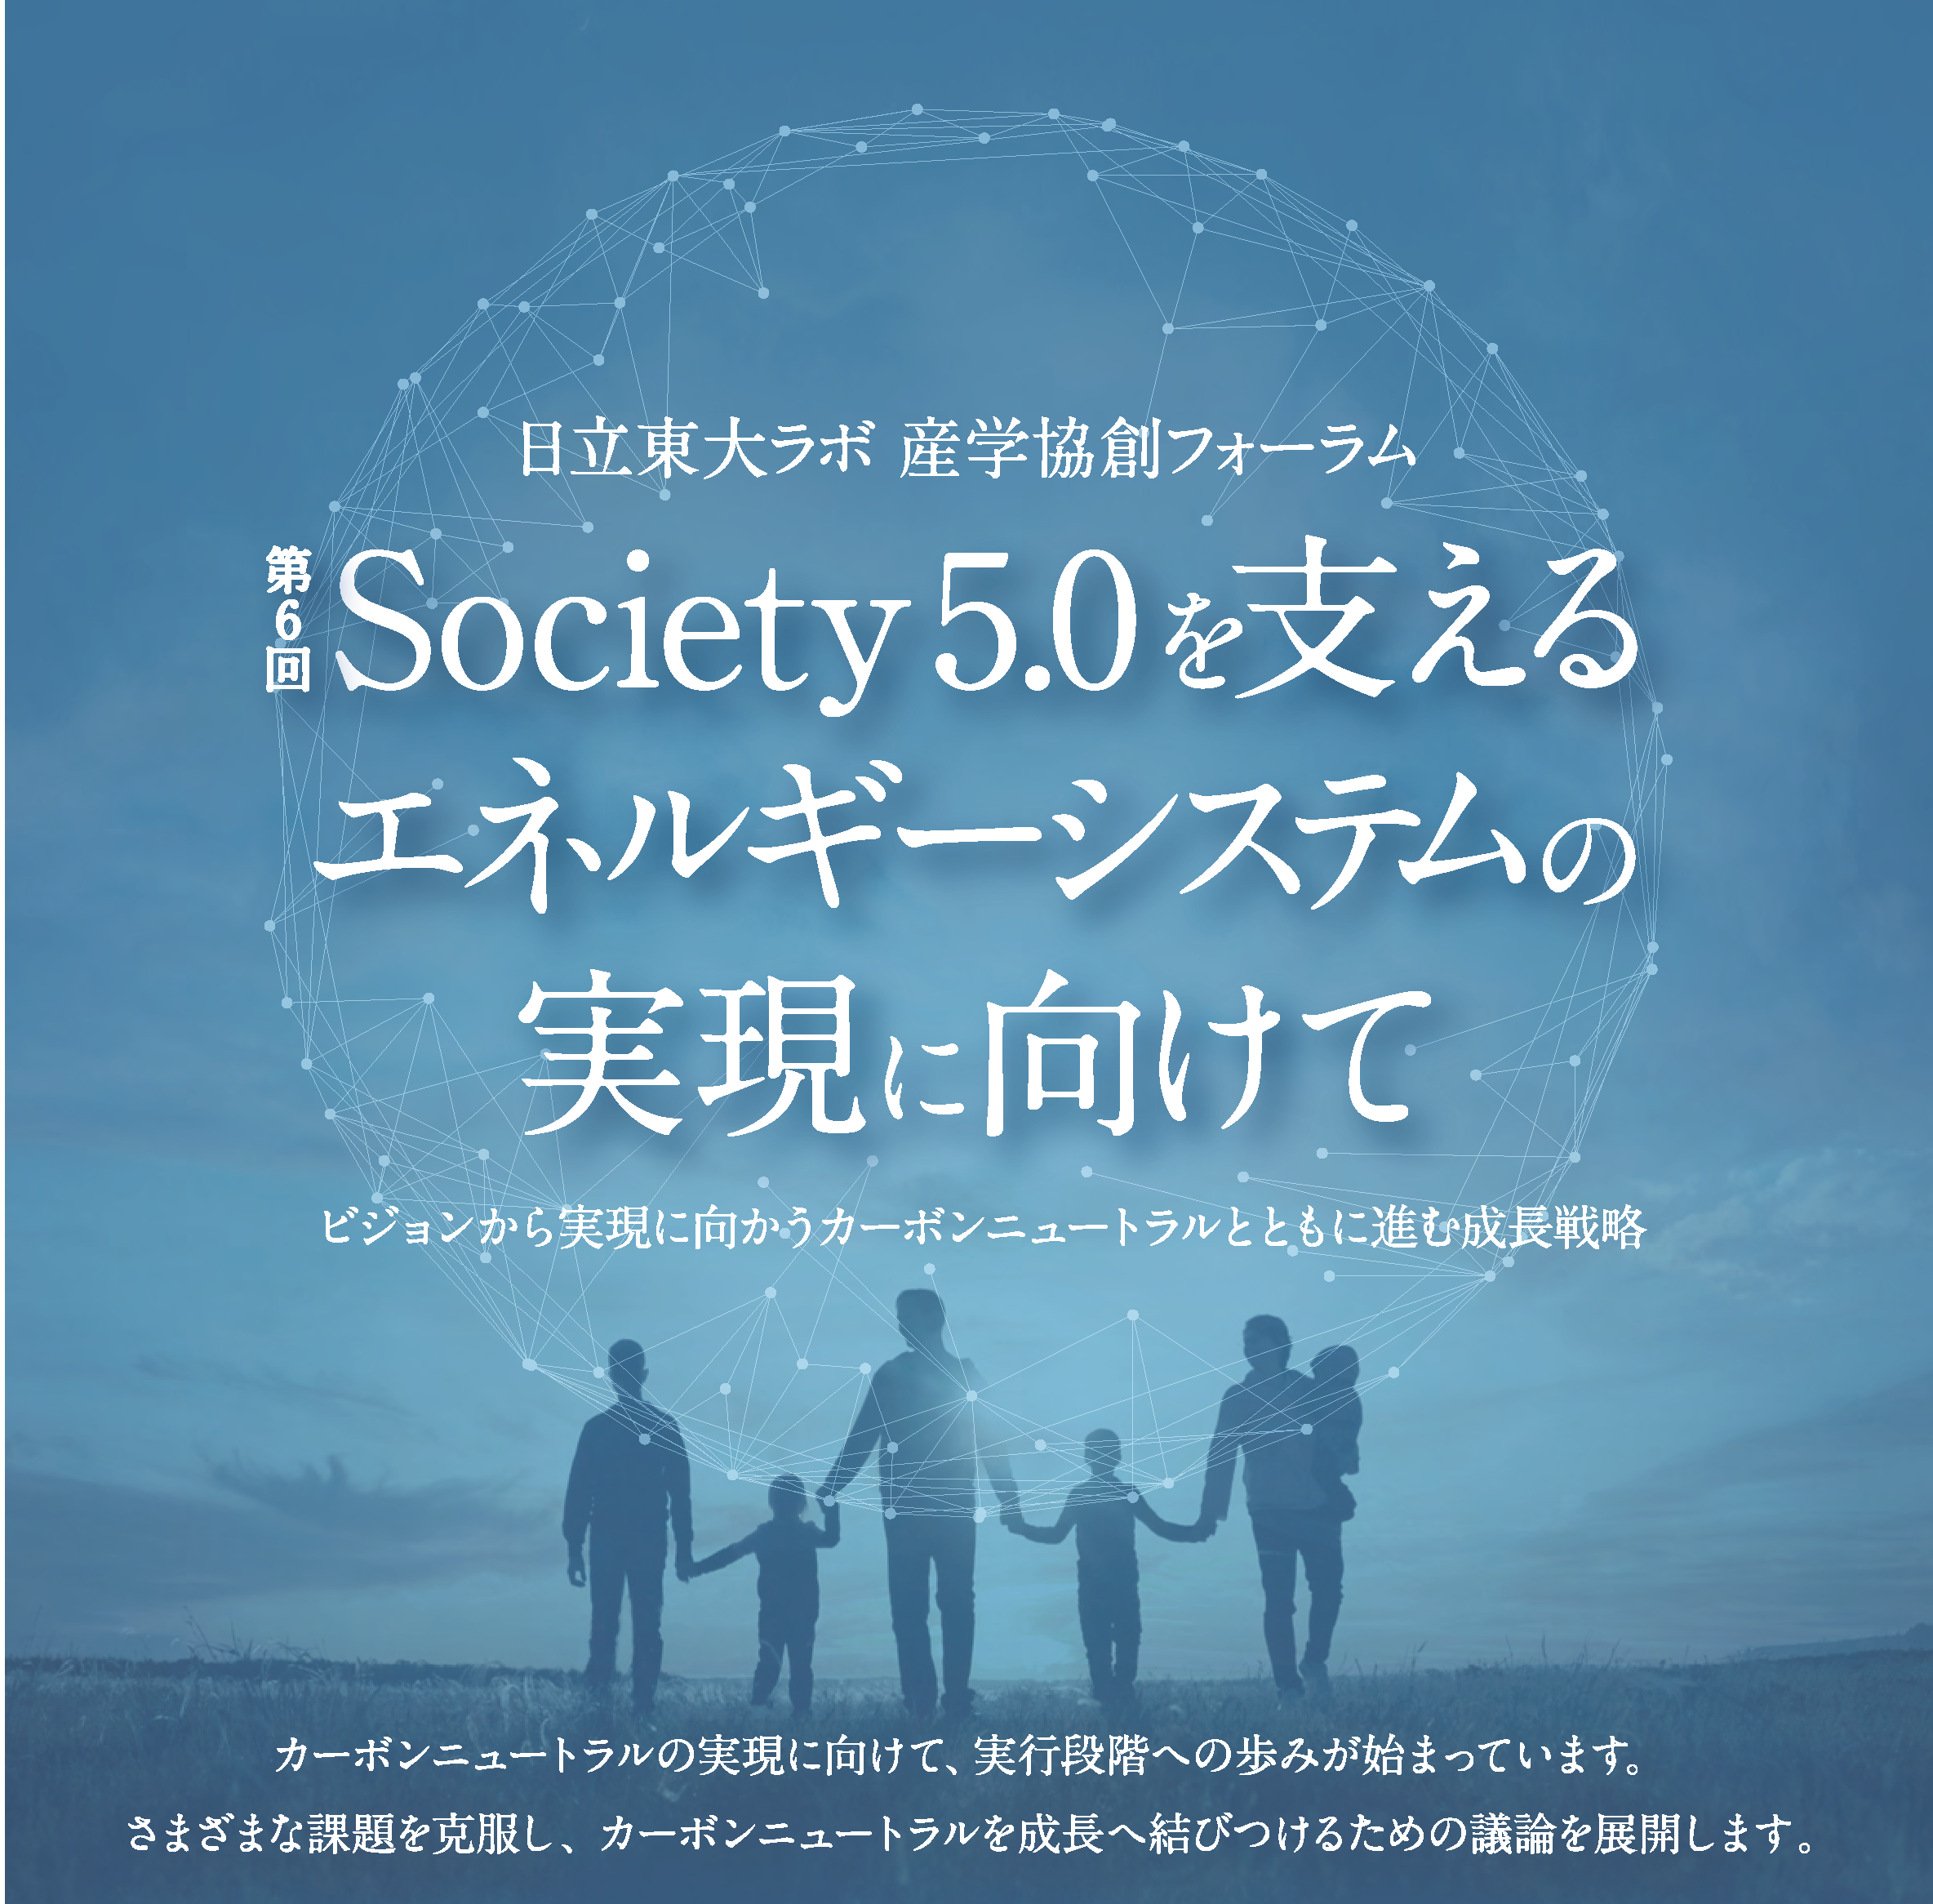 日立東大ラボ・産学協創フォーラム 「第6回 Society 5.0を支えるエネルギーシステムの実現に向けて」を 開催します。